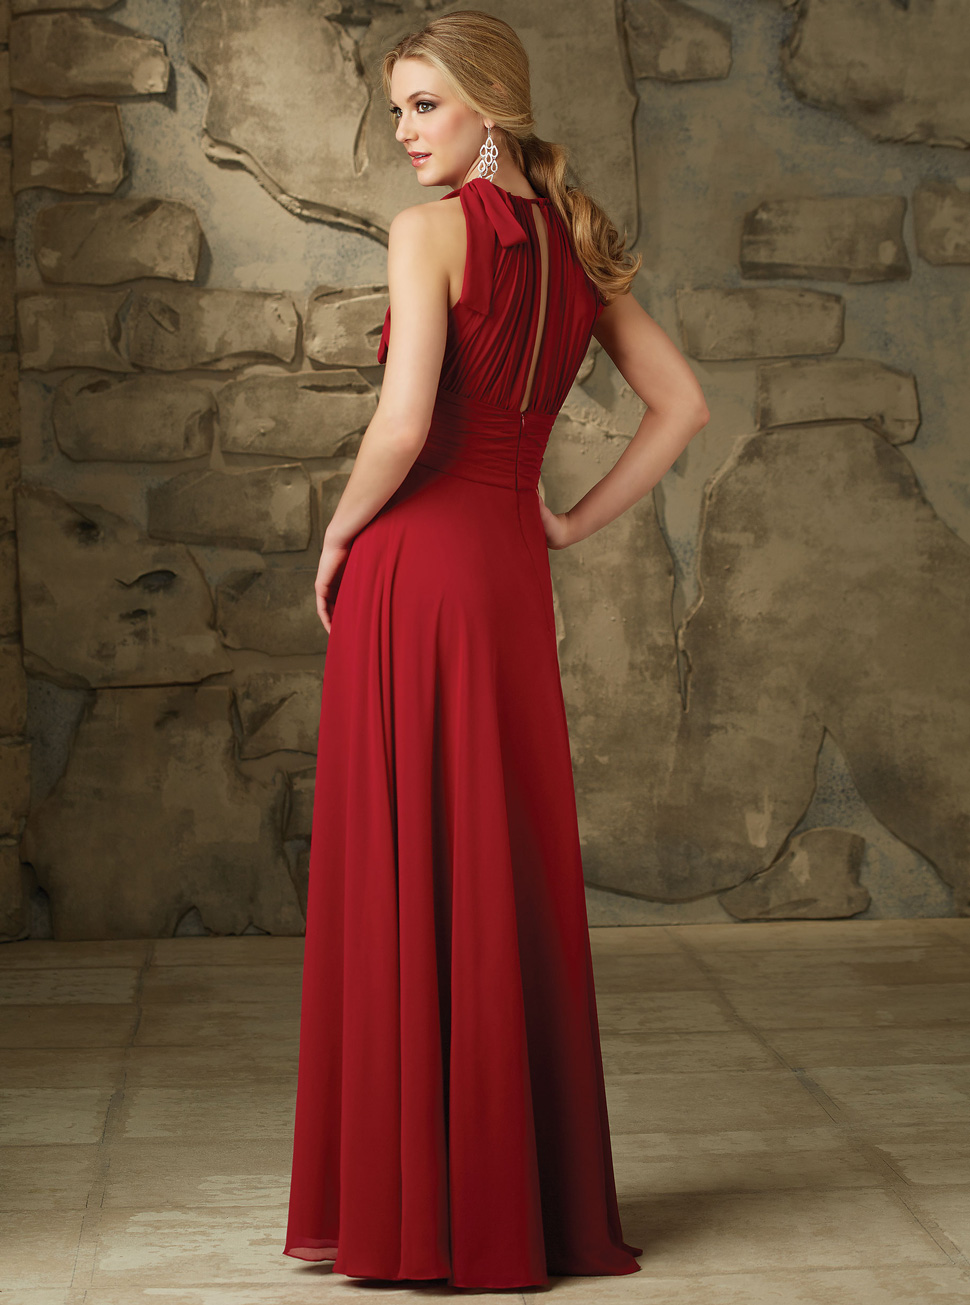 酒红色雪纺长裙批发新款欧式公主式高腰晚礼服女装LIFU6065